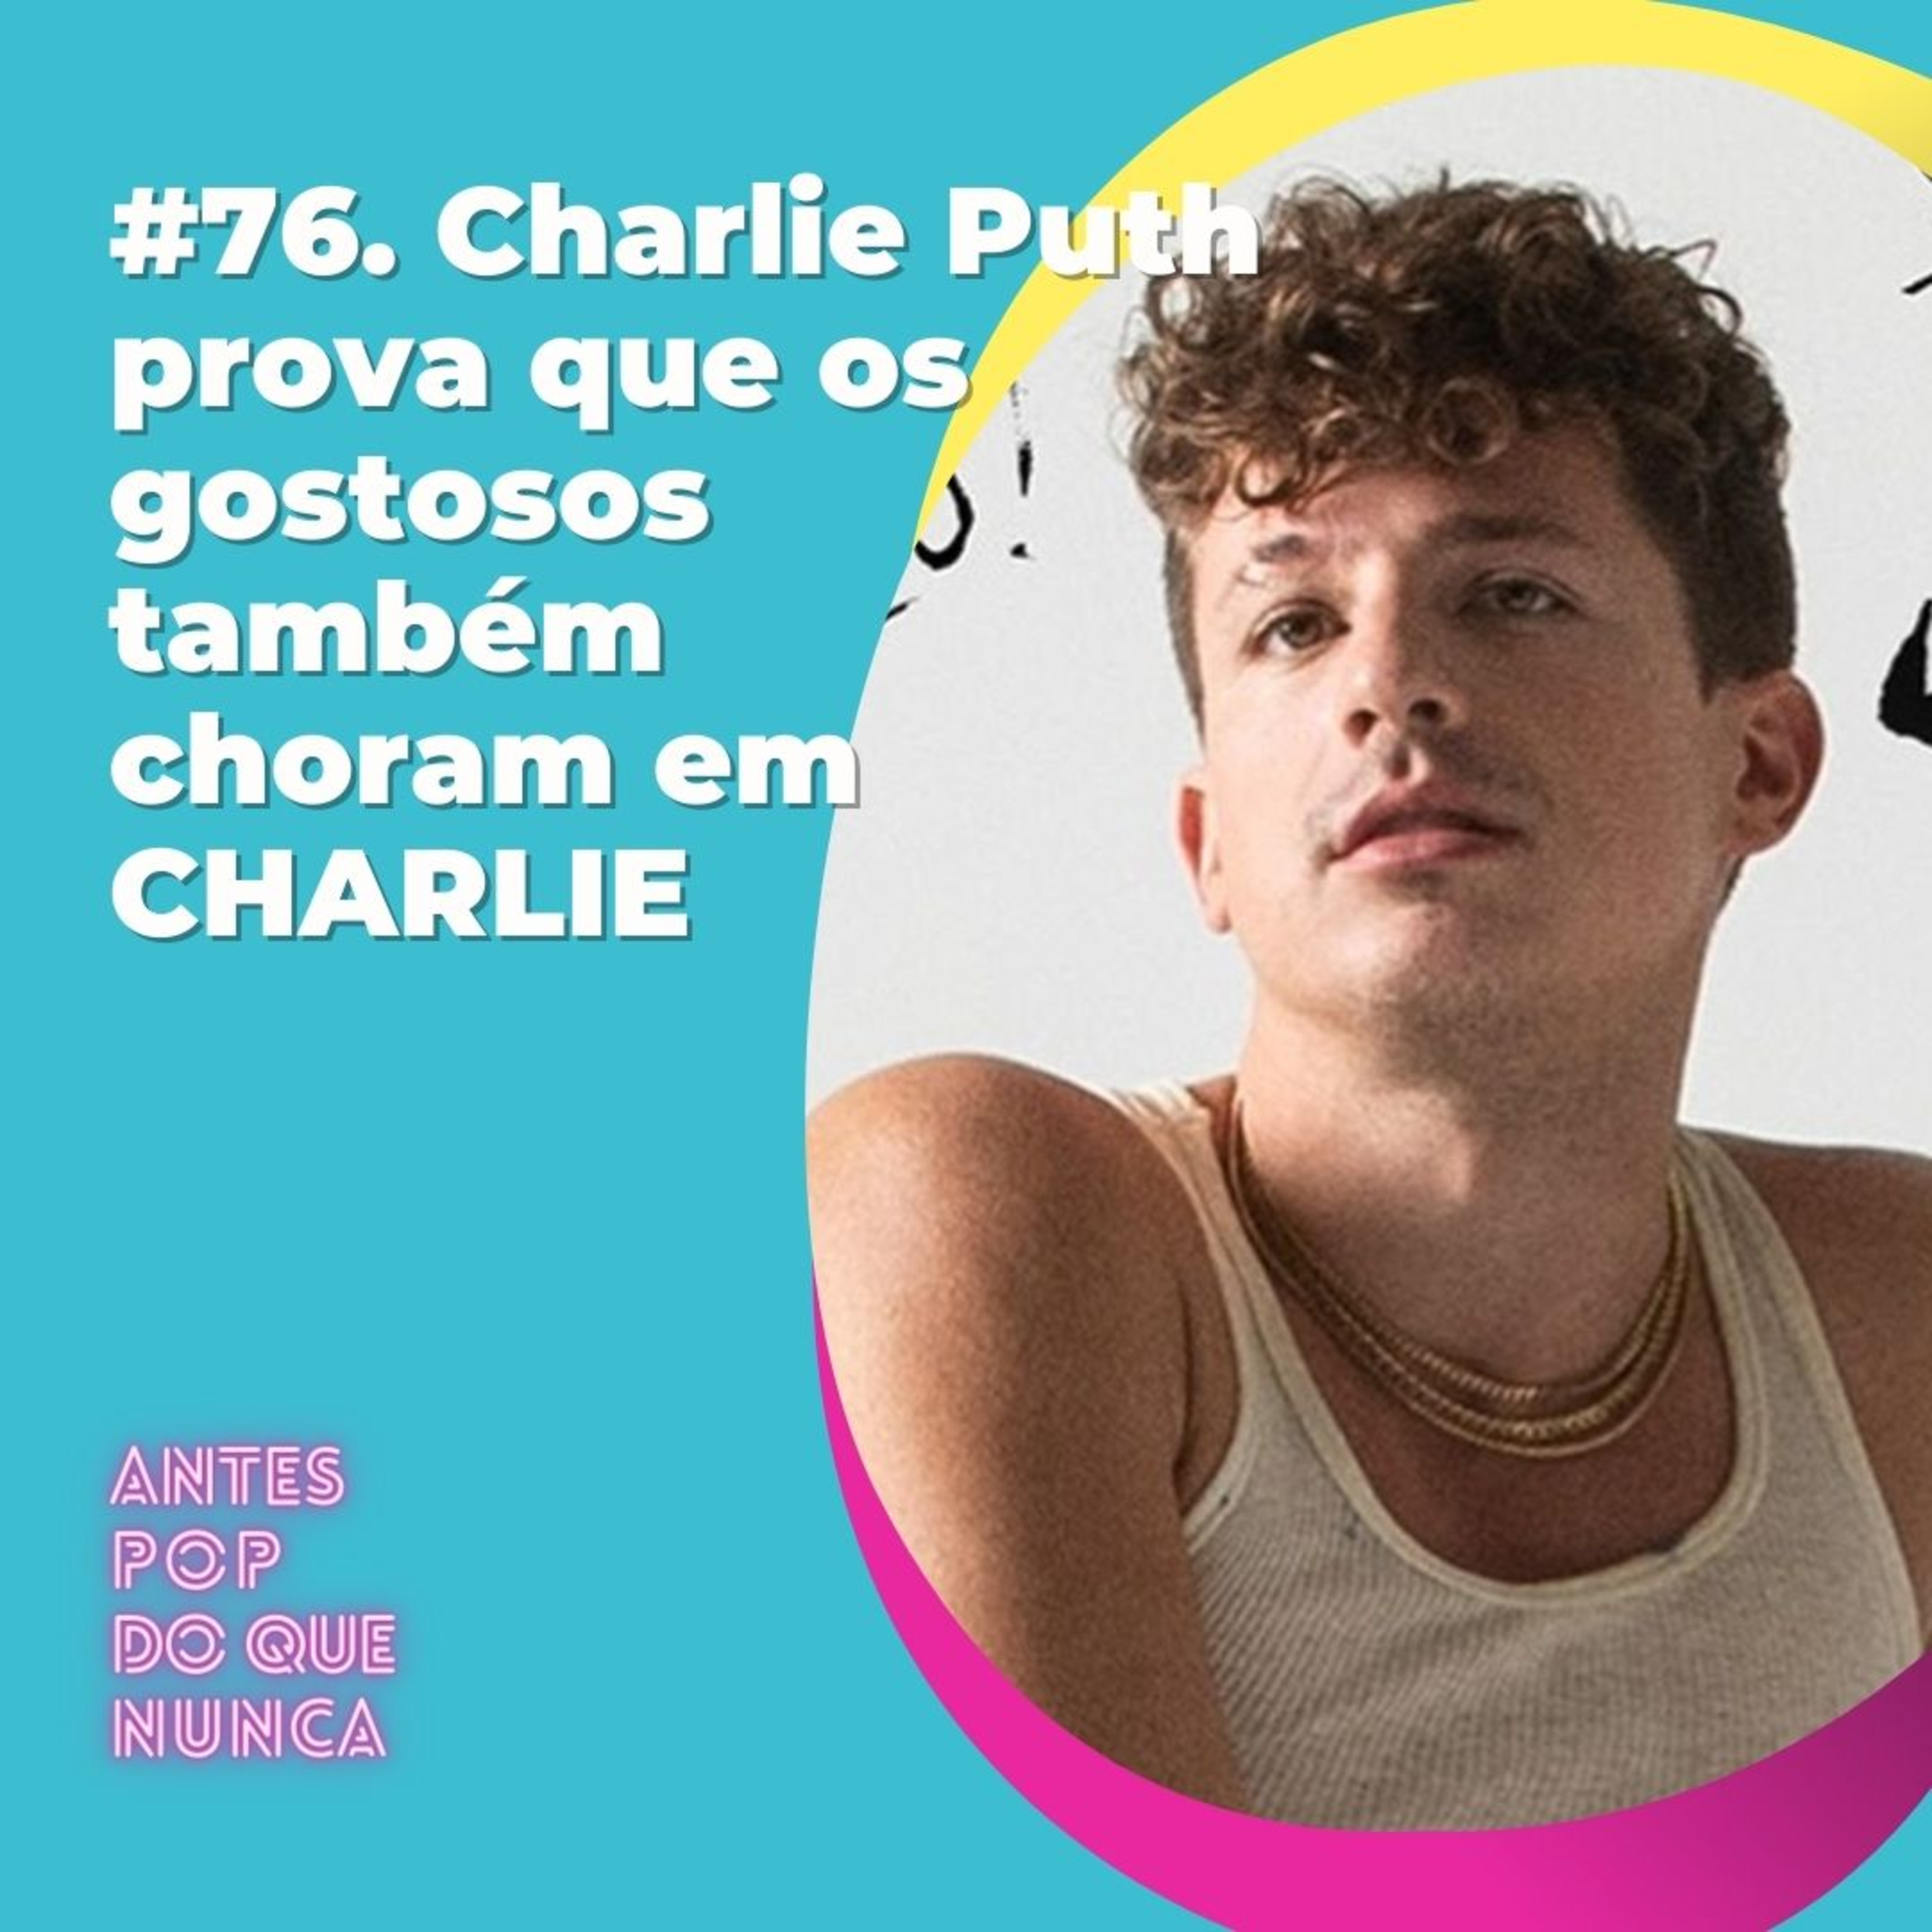 #76. Charlie Puth prova que os gostosos também choram em CHARLIE